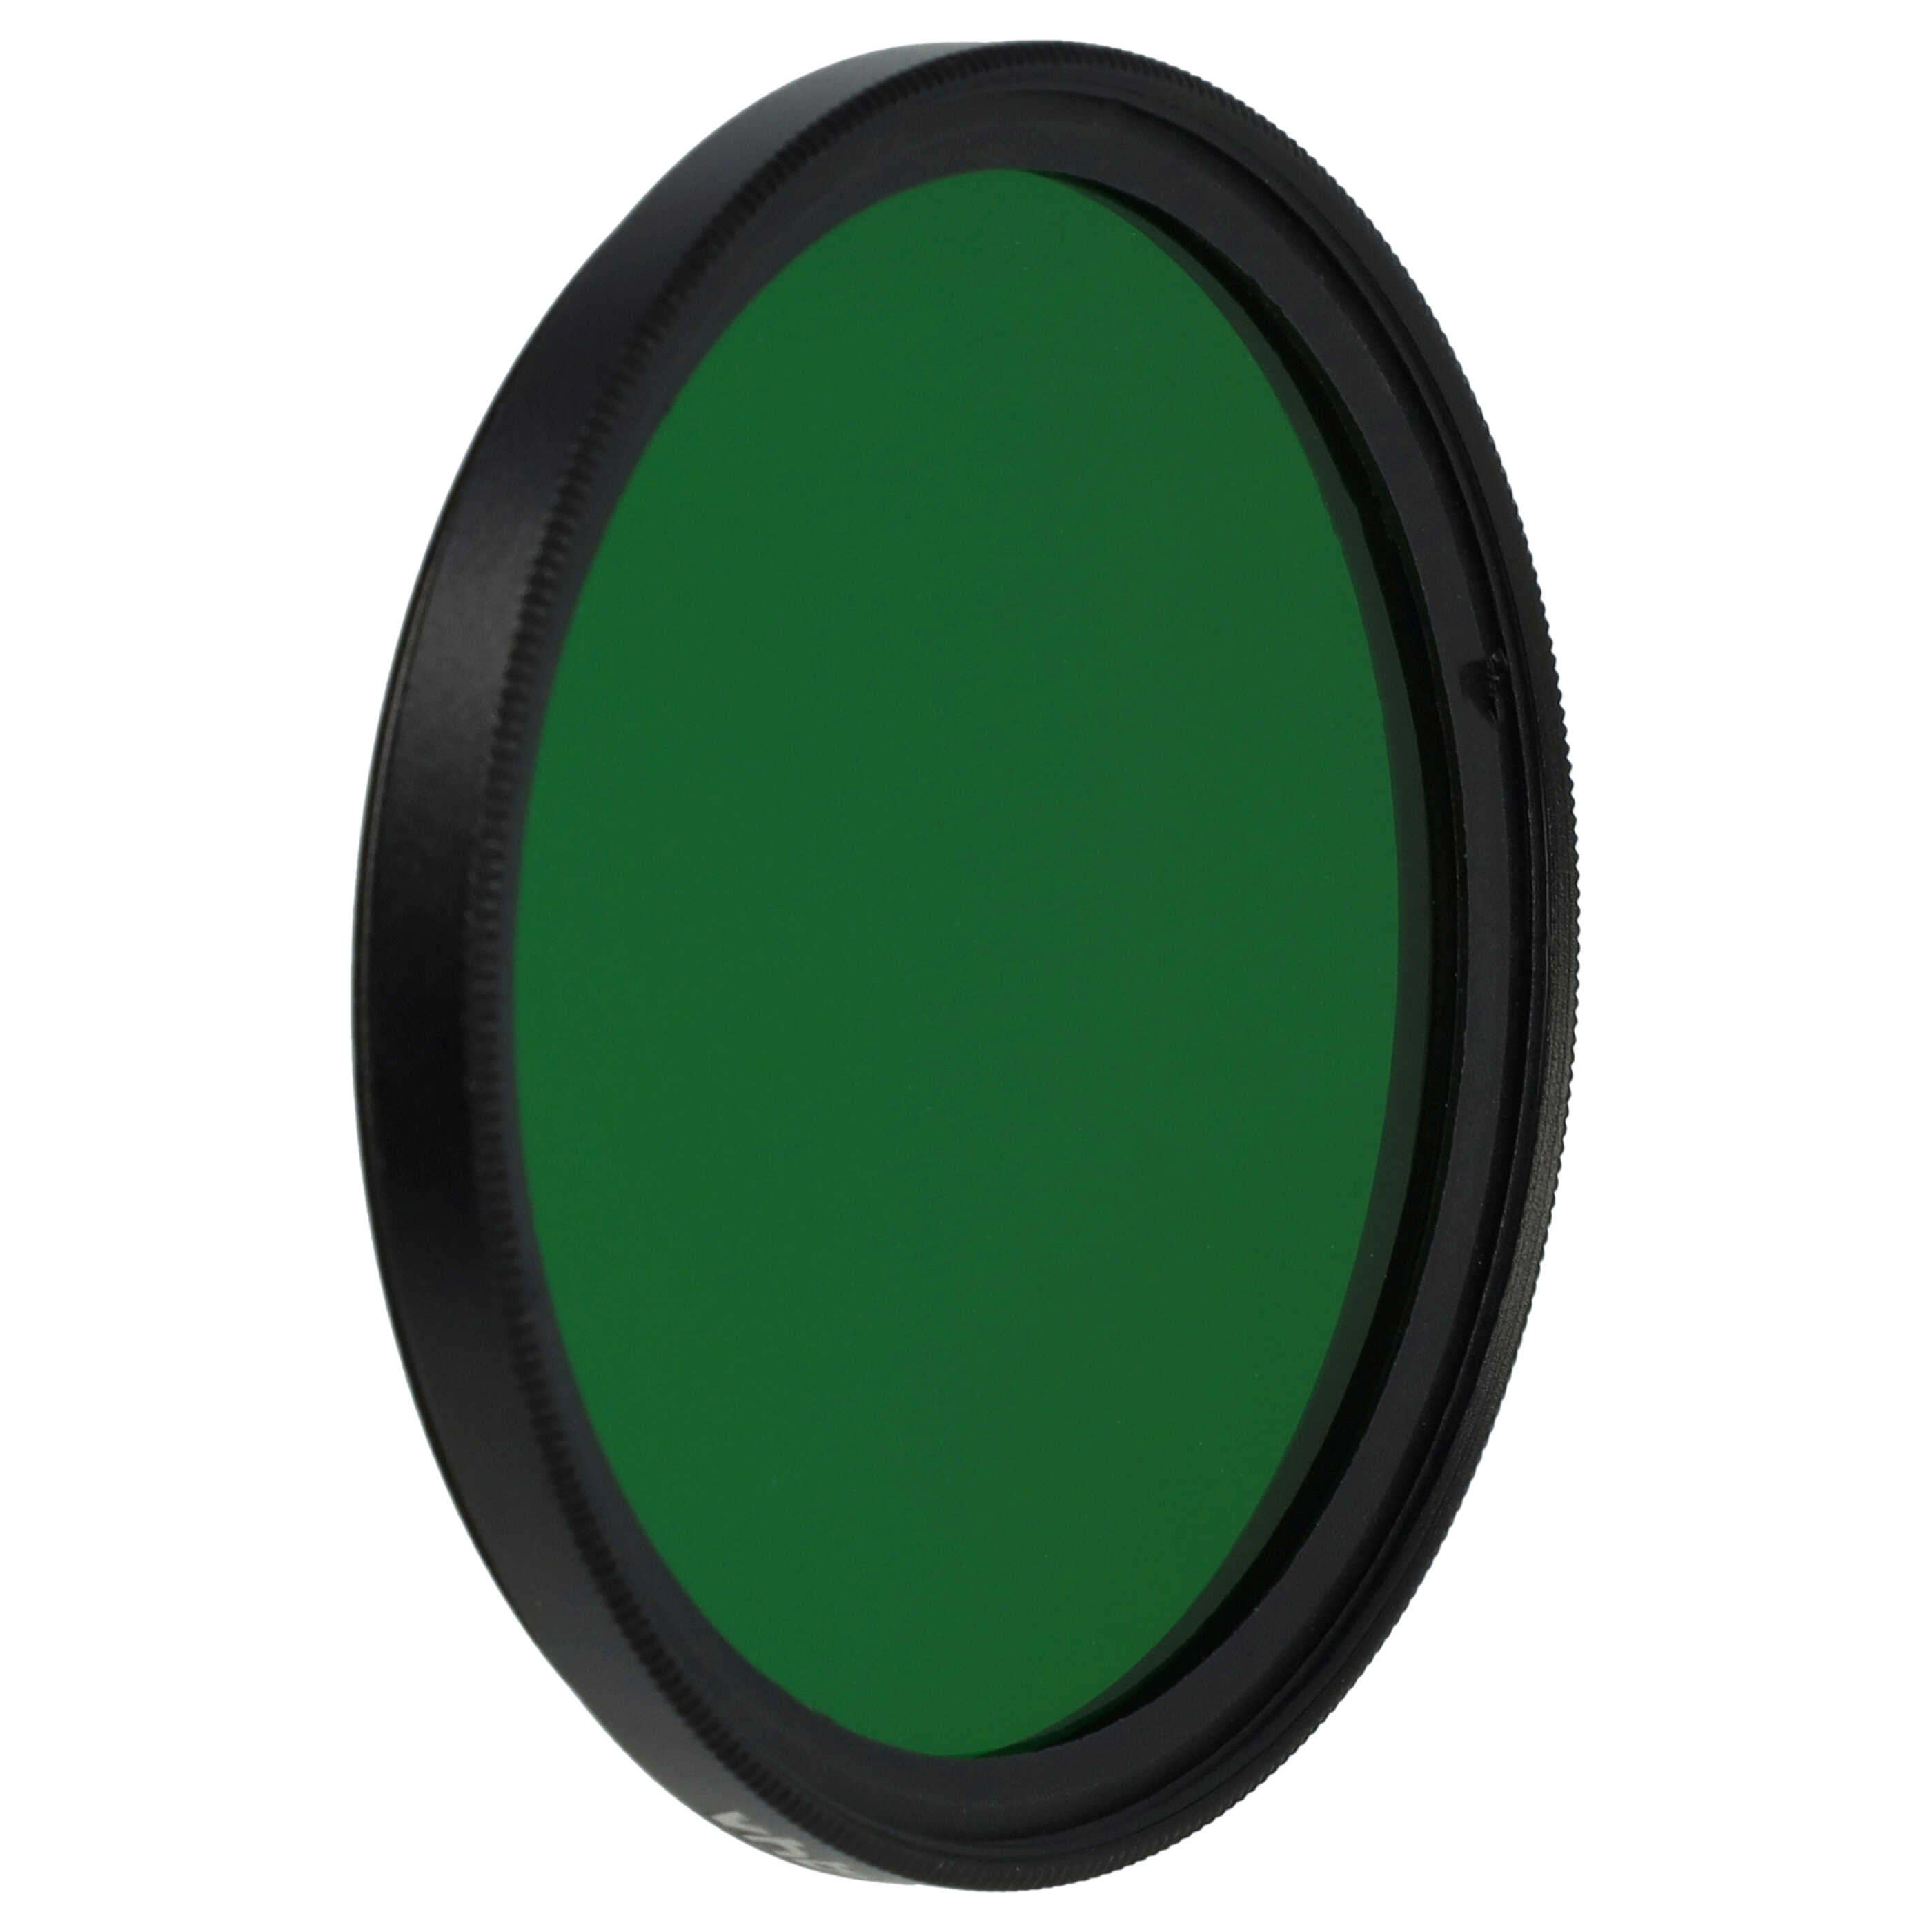 Farbfilter grün passend für Kamera Objektive mit 55 mm Filtergewinde - Grünfilter